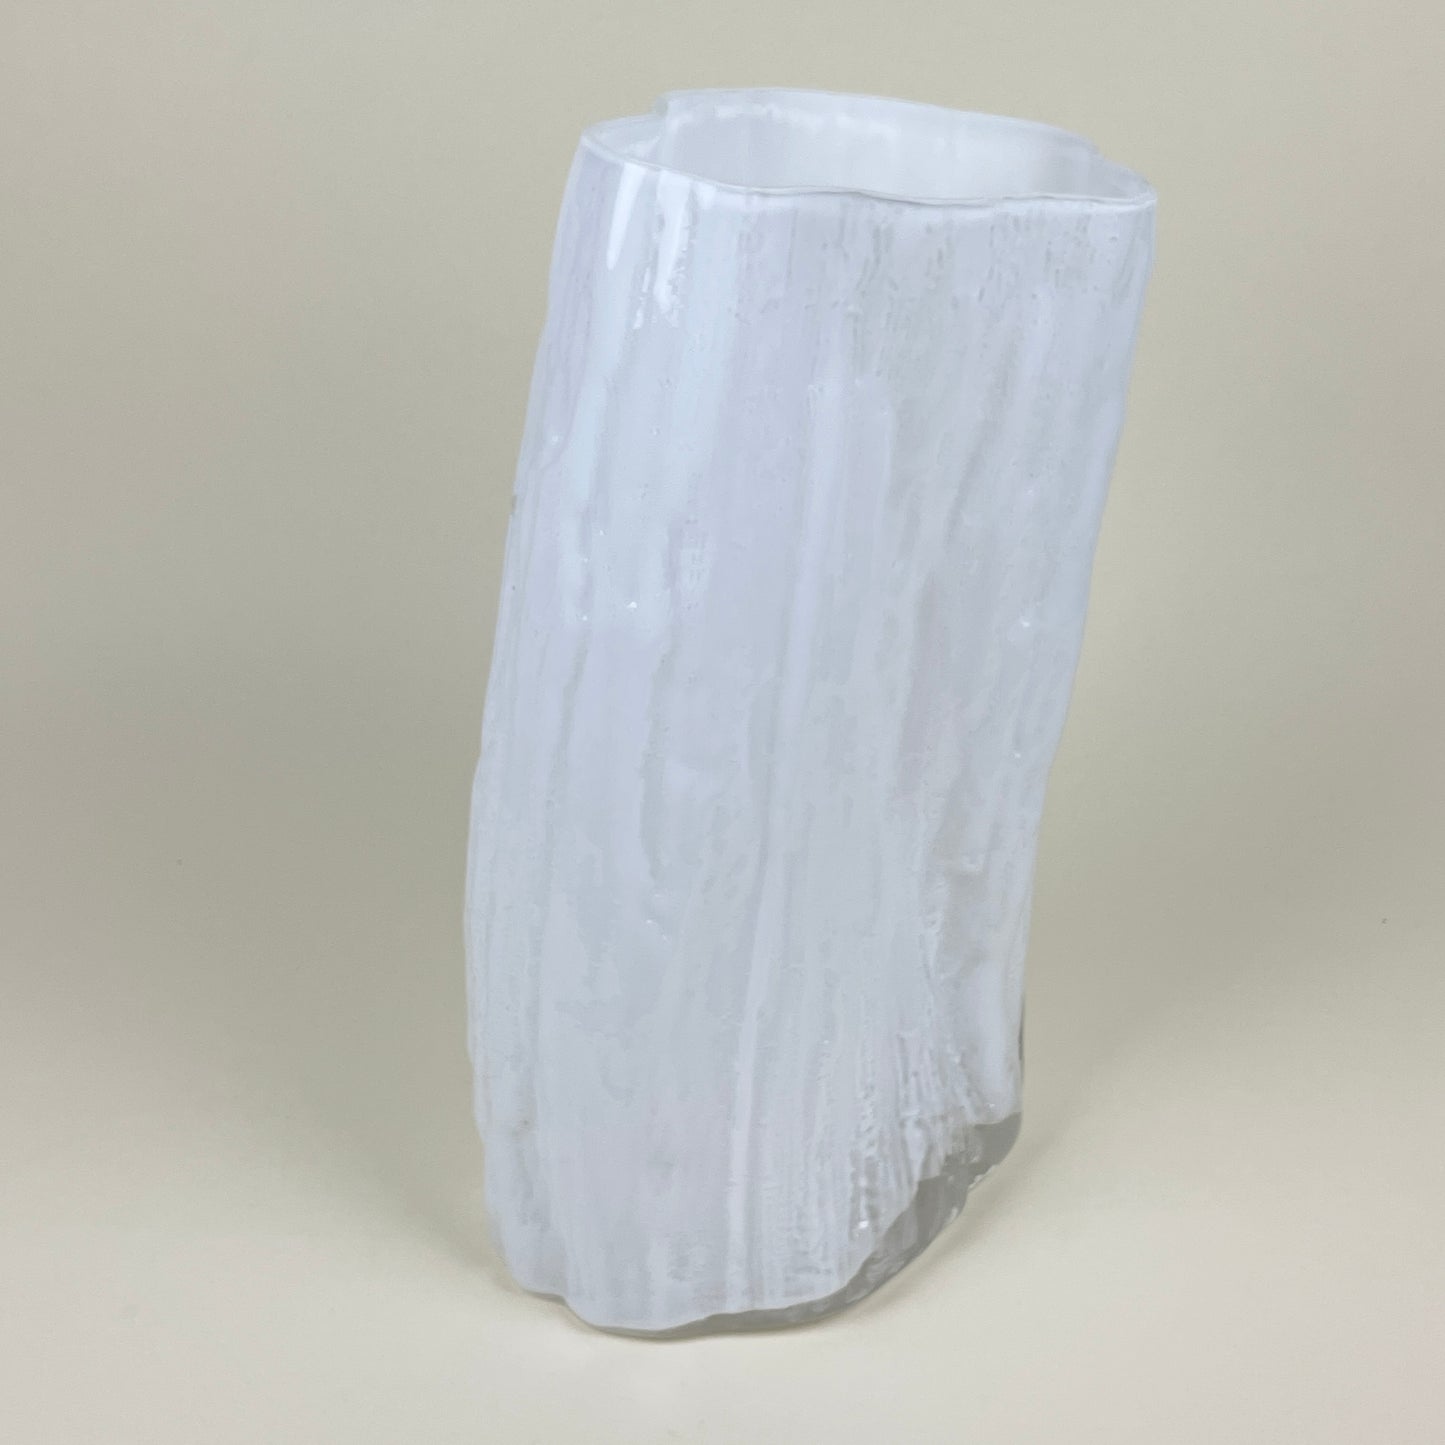 White mouth-blown vase by LAB LA BLA